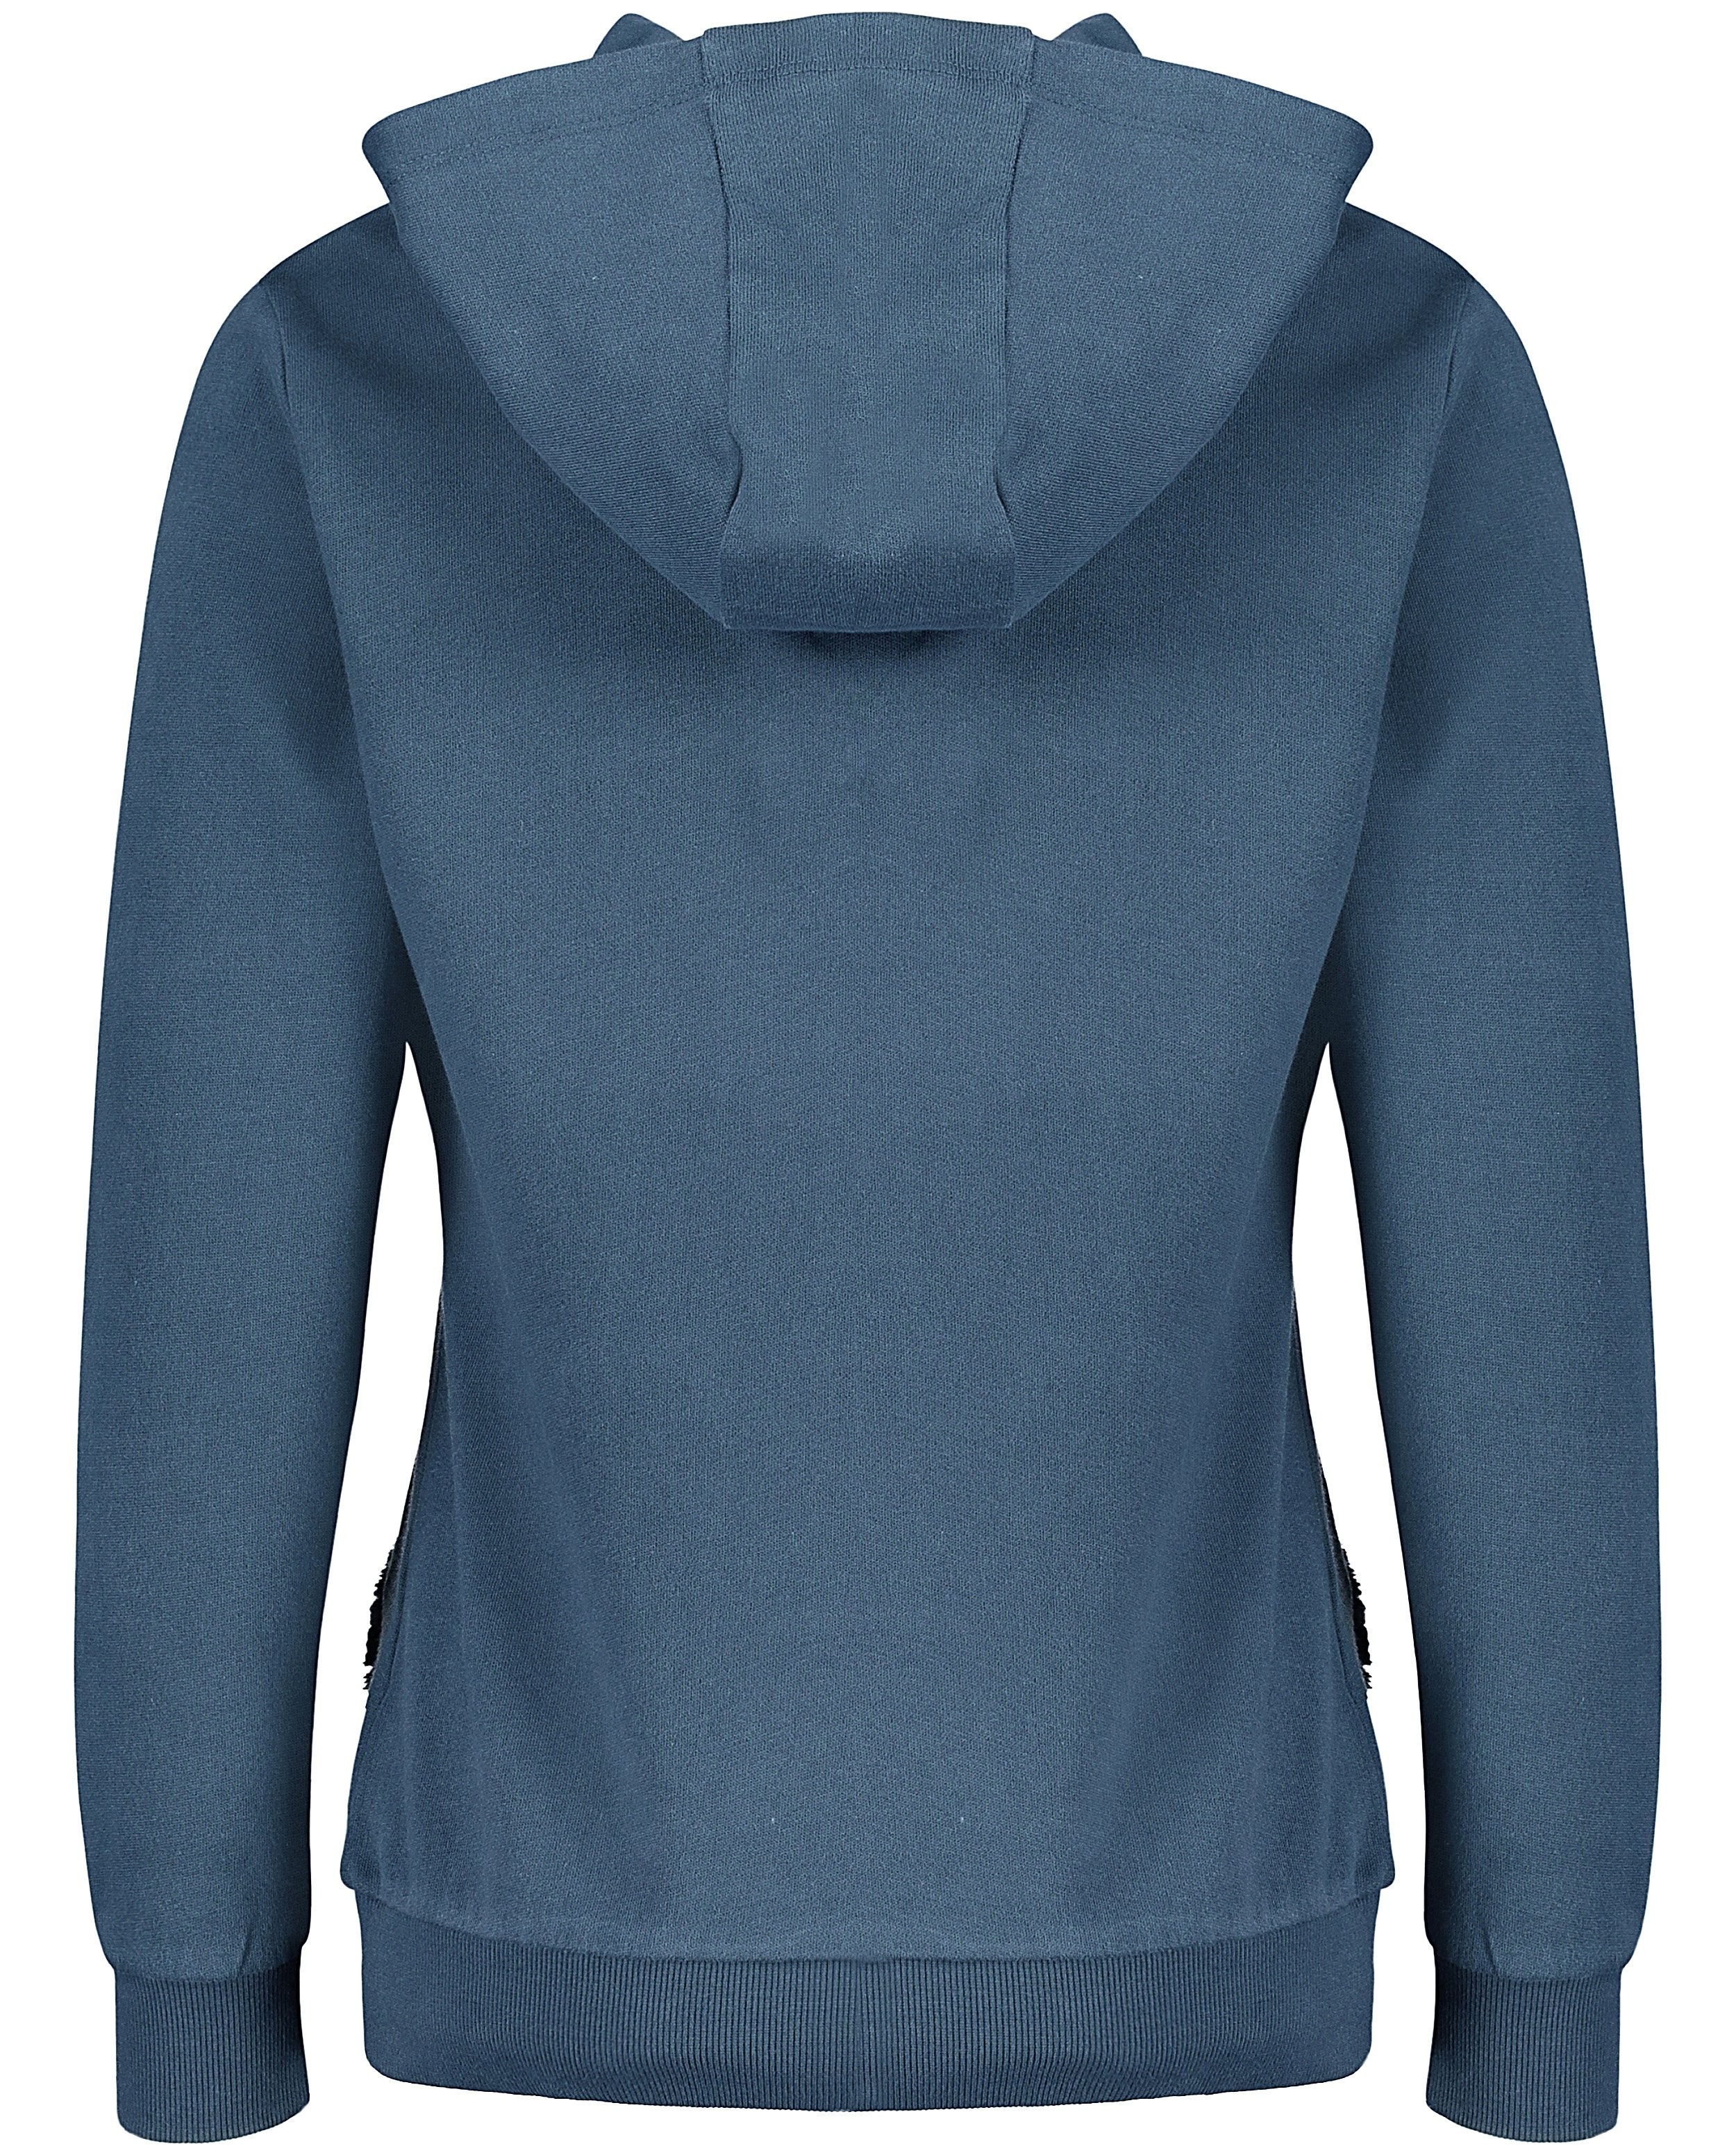 Sweaters - Groenblauwe hoodie